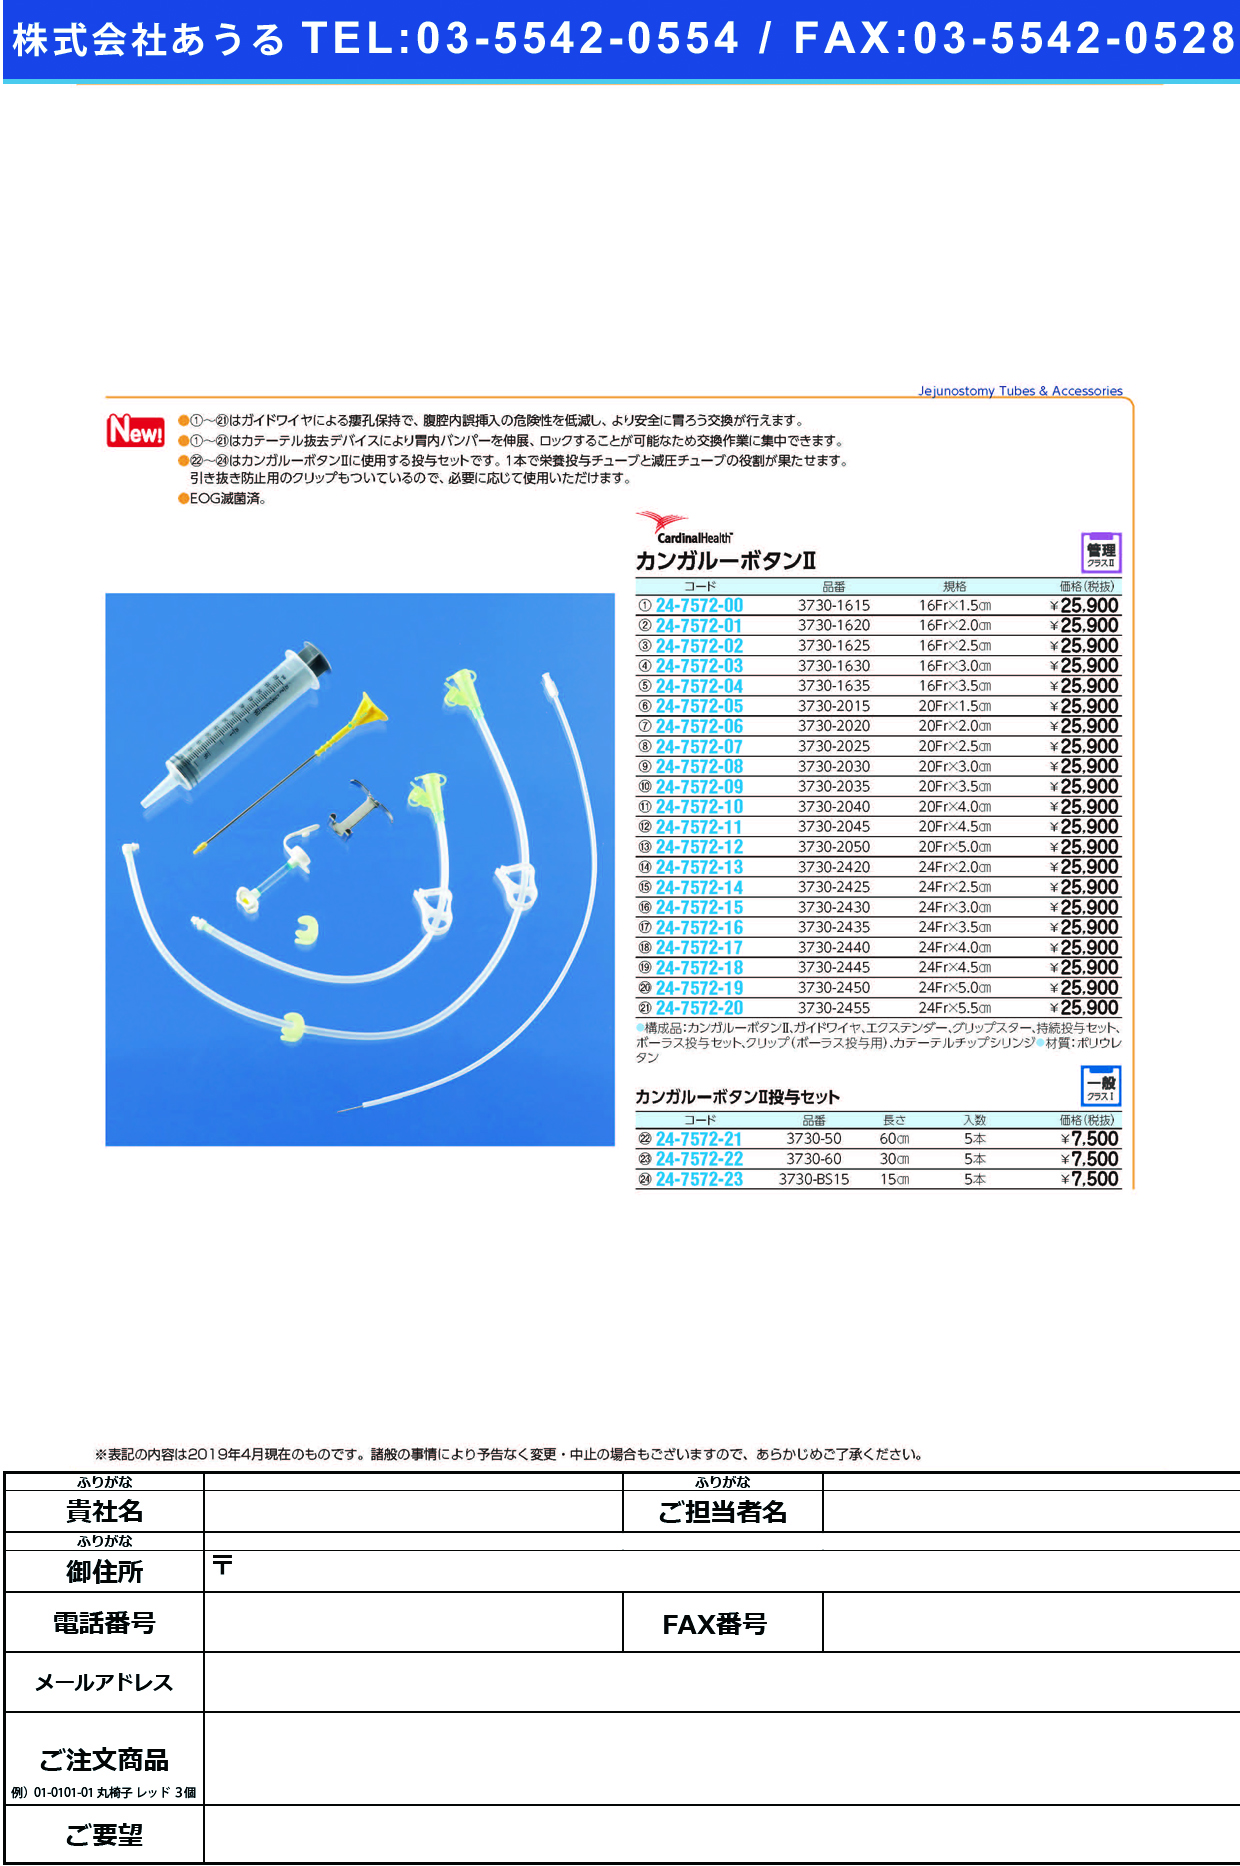 (24-7572-08)カンガルーボタンⅡ3730-2030(20FR3.0CM) ｶﾝｶﾞﾙｰﾎﾞﾀﾝ2(日本コヴィディエン)【1個単位】【2019年カタログ商品】